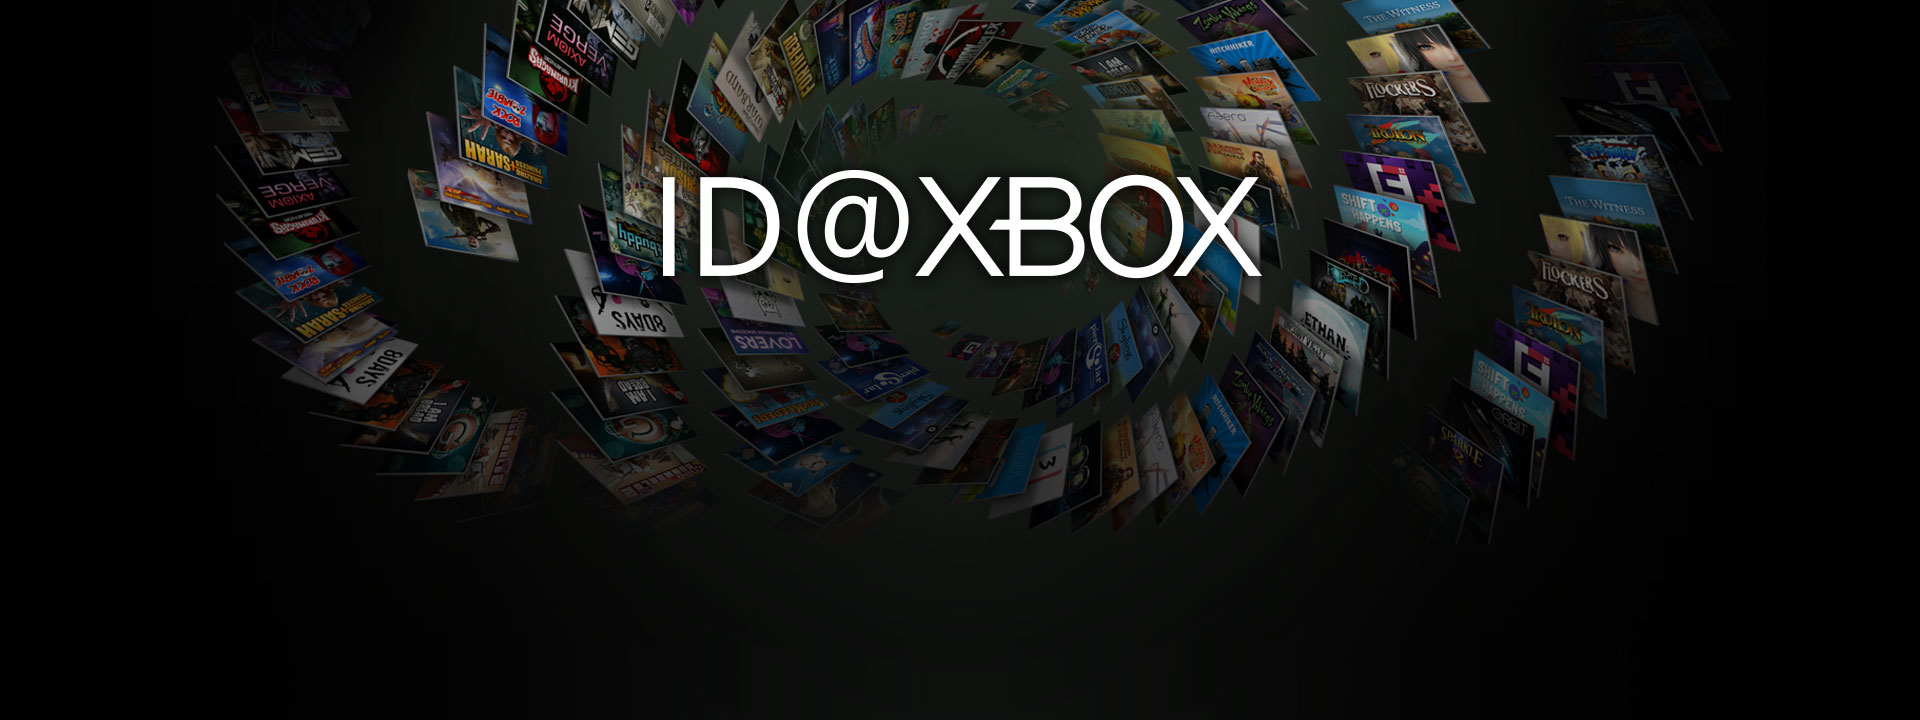 ID at Xbox -logo ID-pelikokoelman edessä